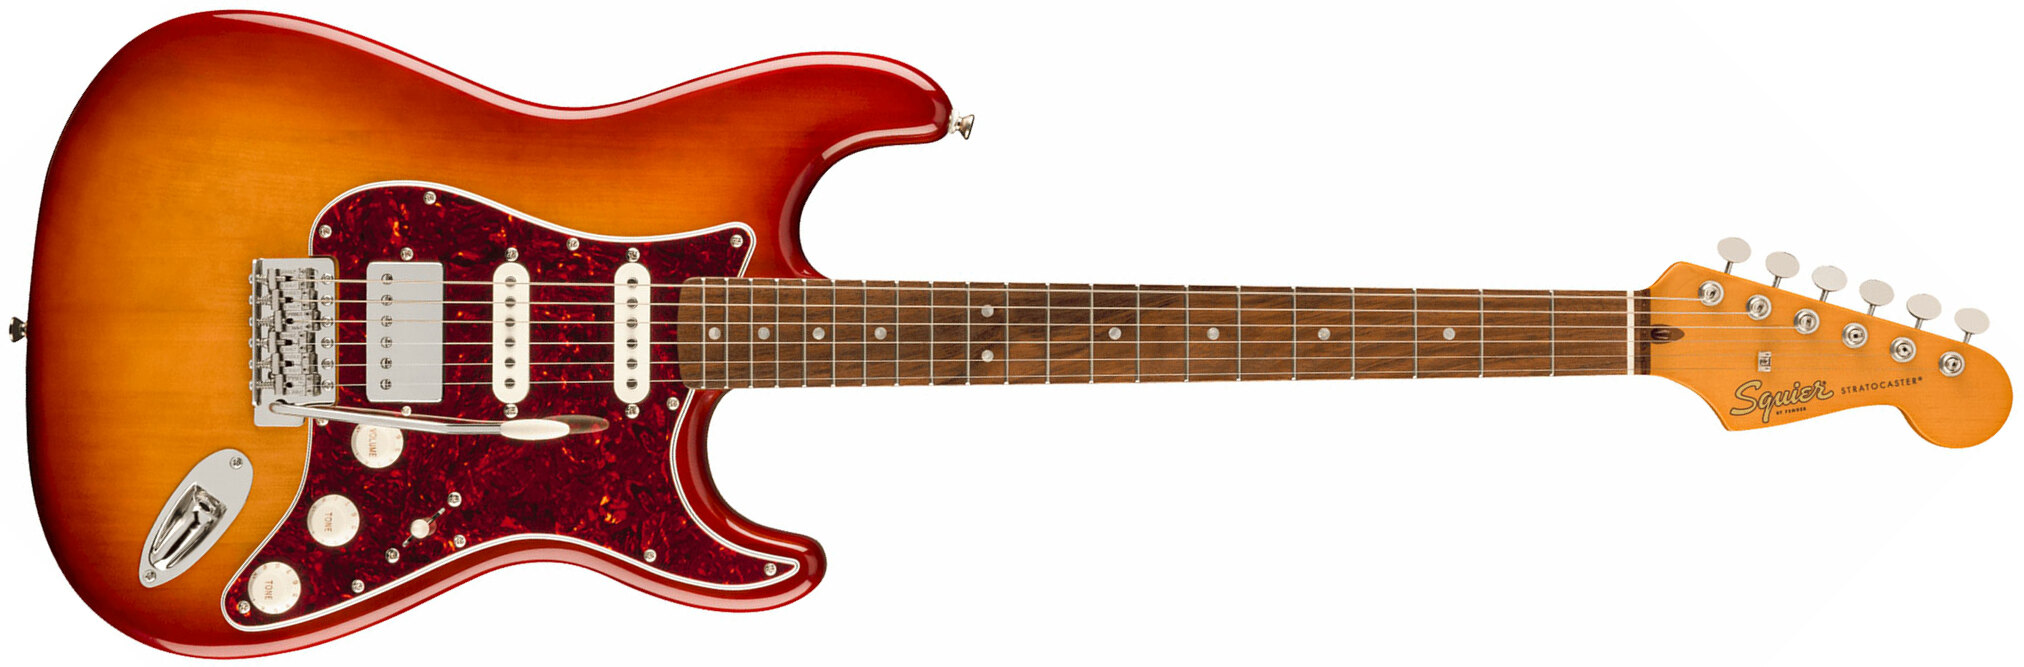 Squier Strat 60s Classic Vibe Ltd Hss Trem Lau - Sienna Sunburst - Str shape electric guitar - Main picture